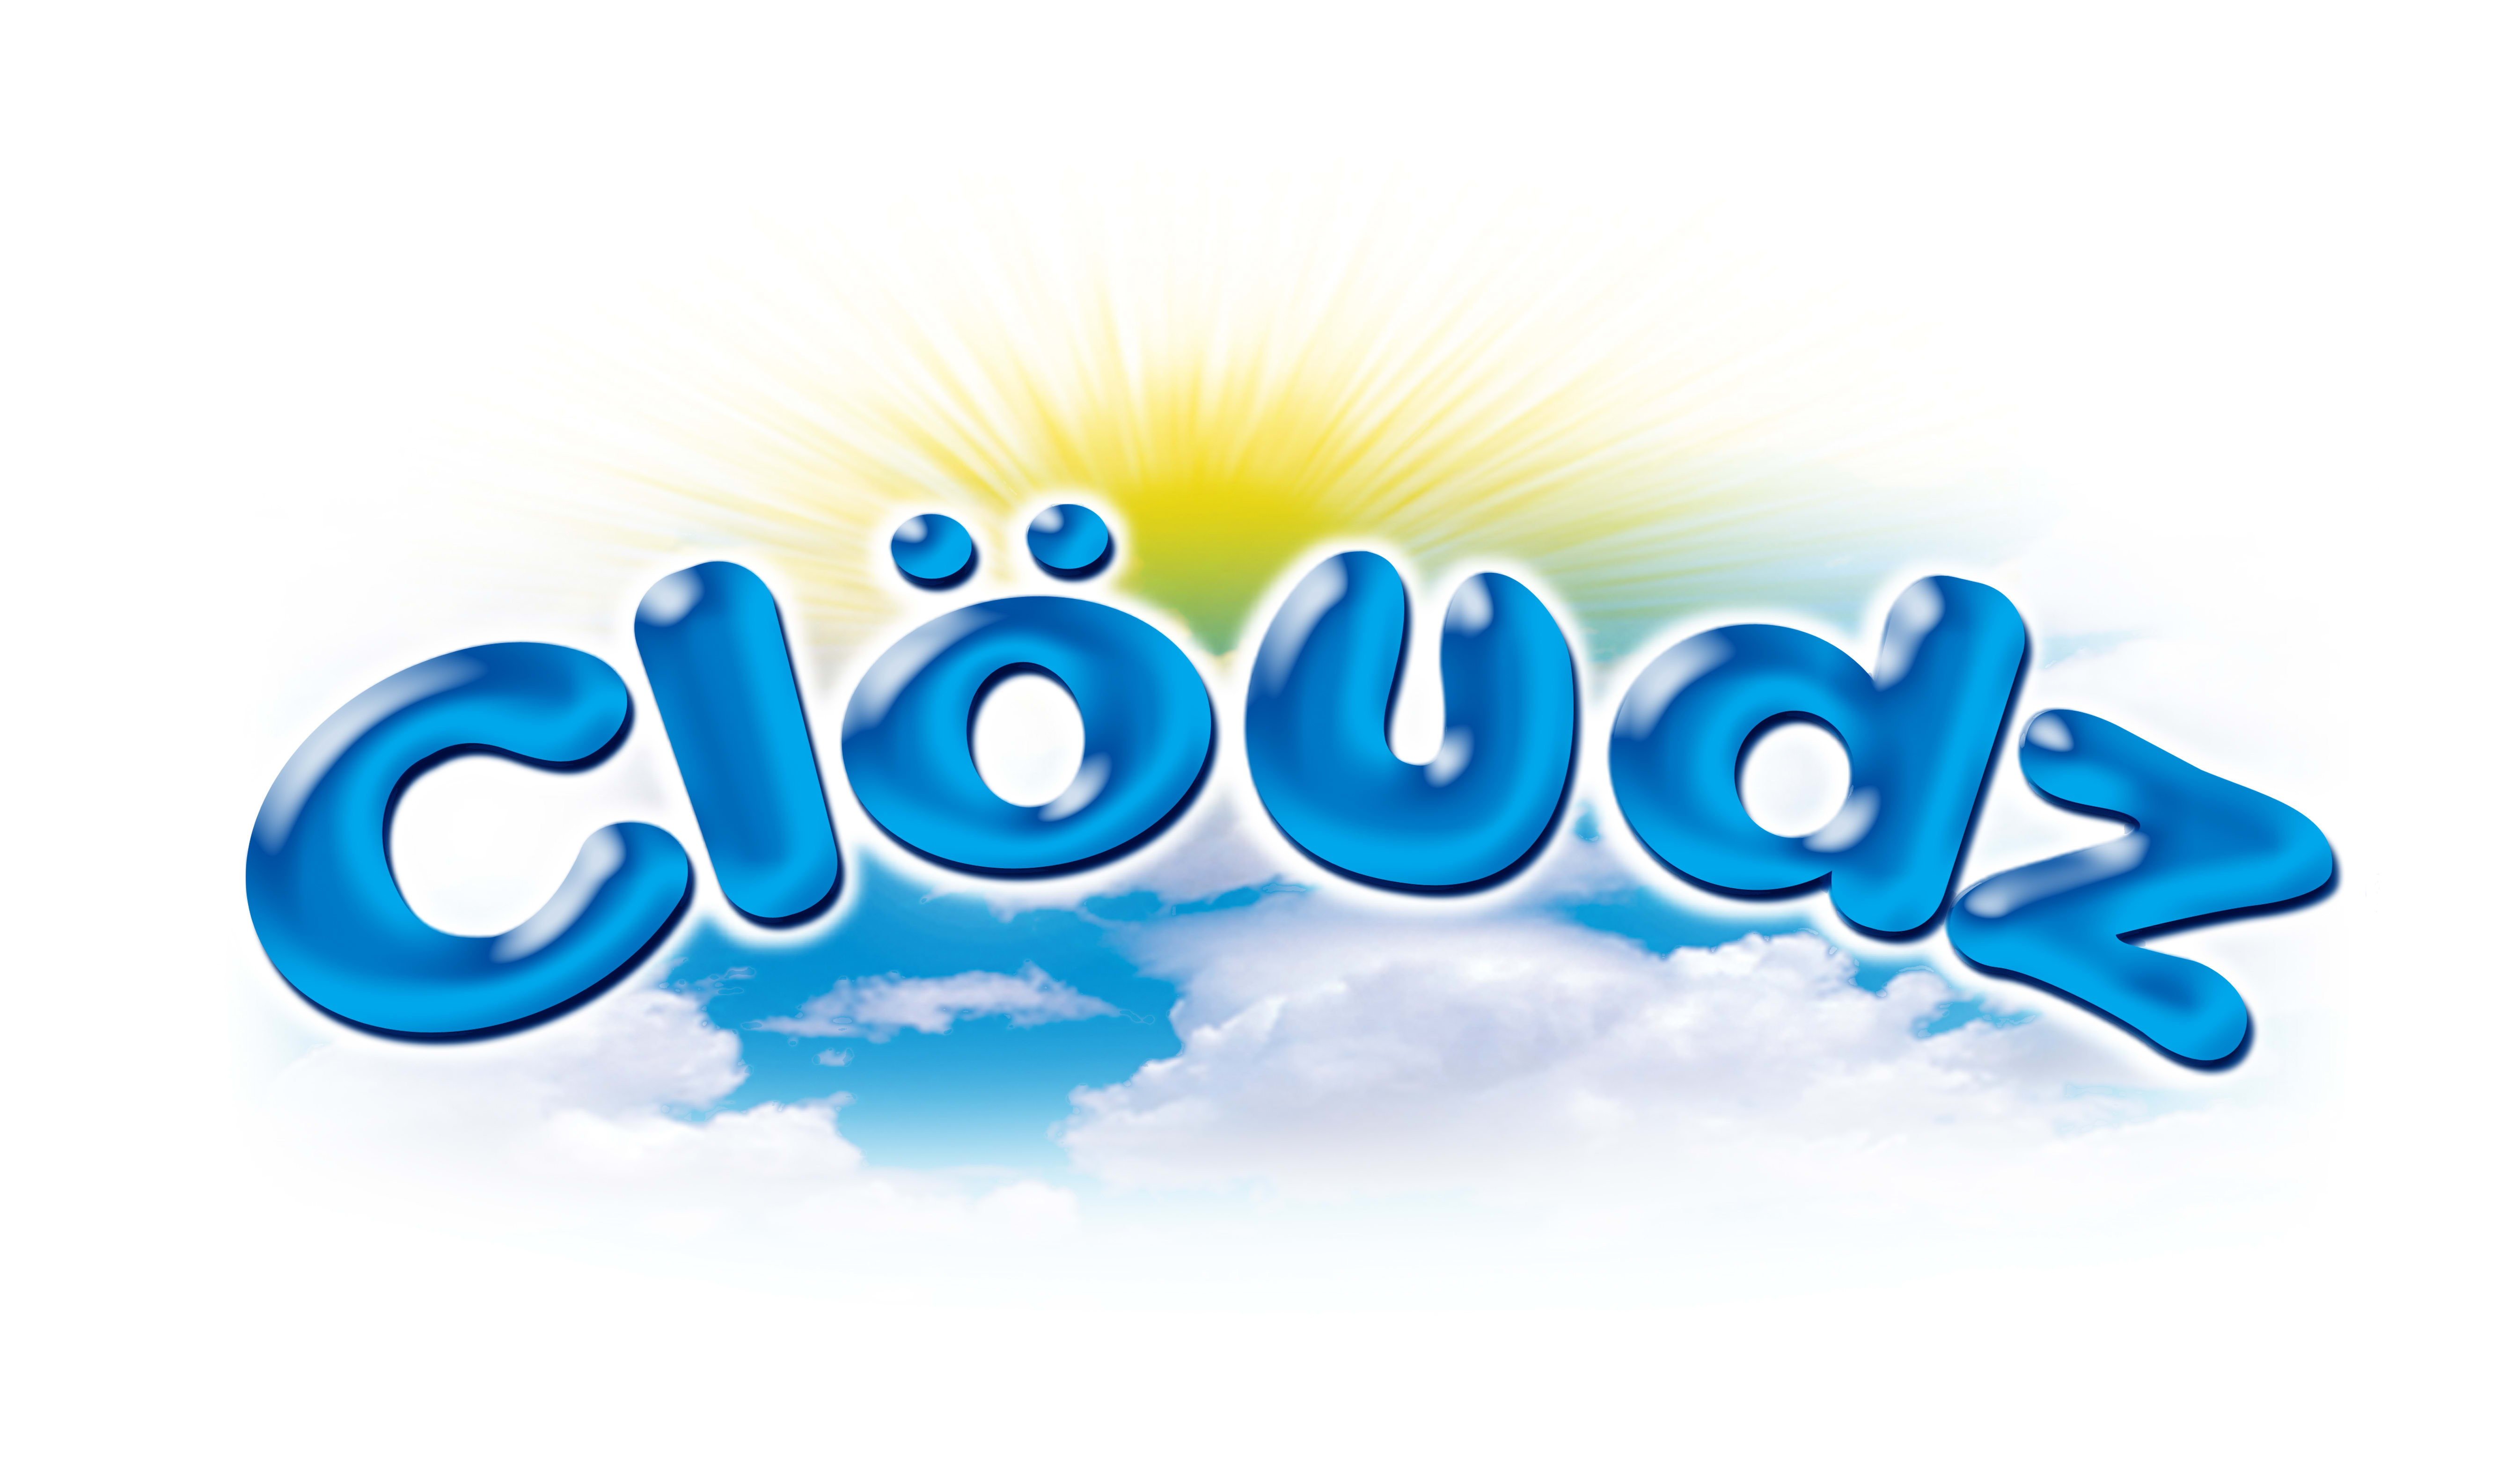 Cloudz Logo